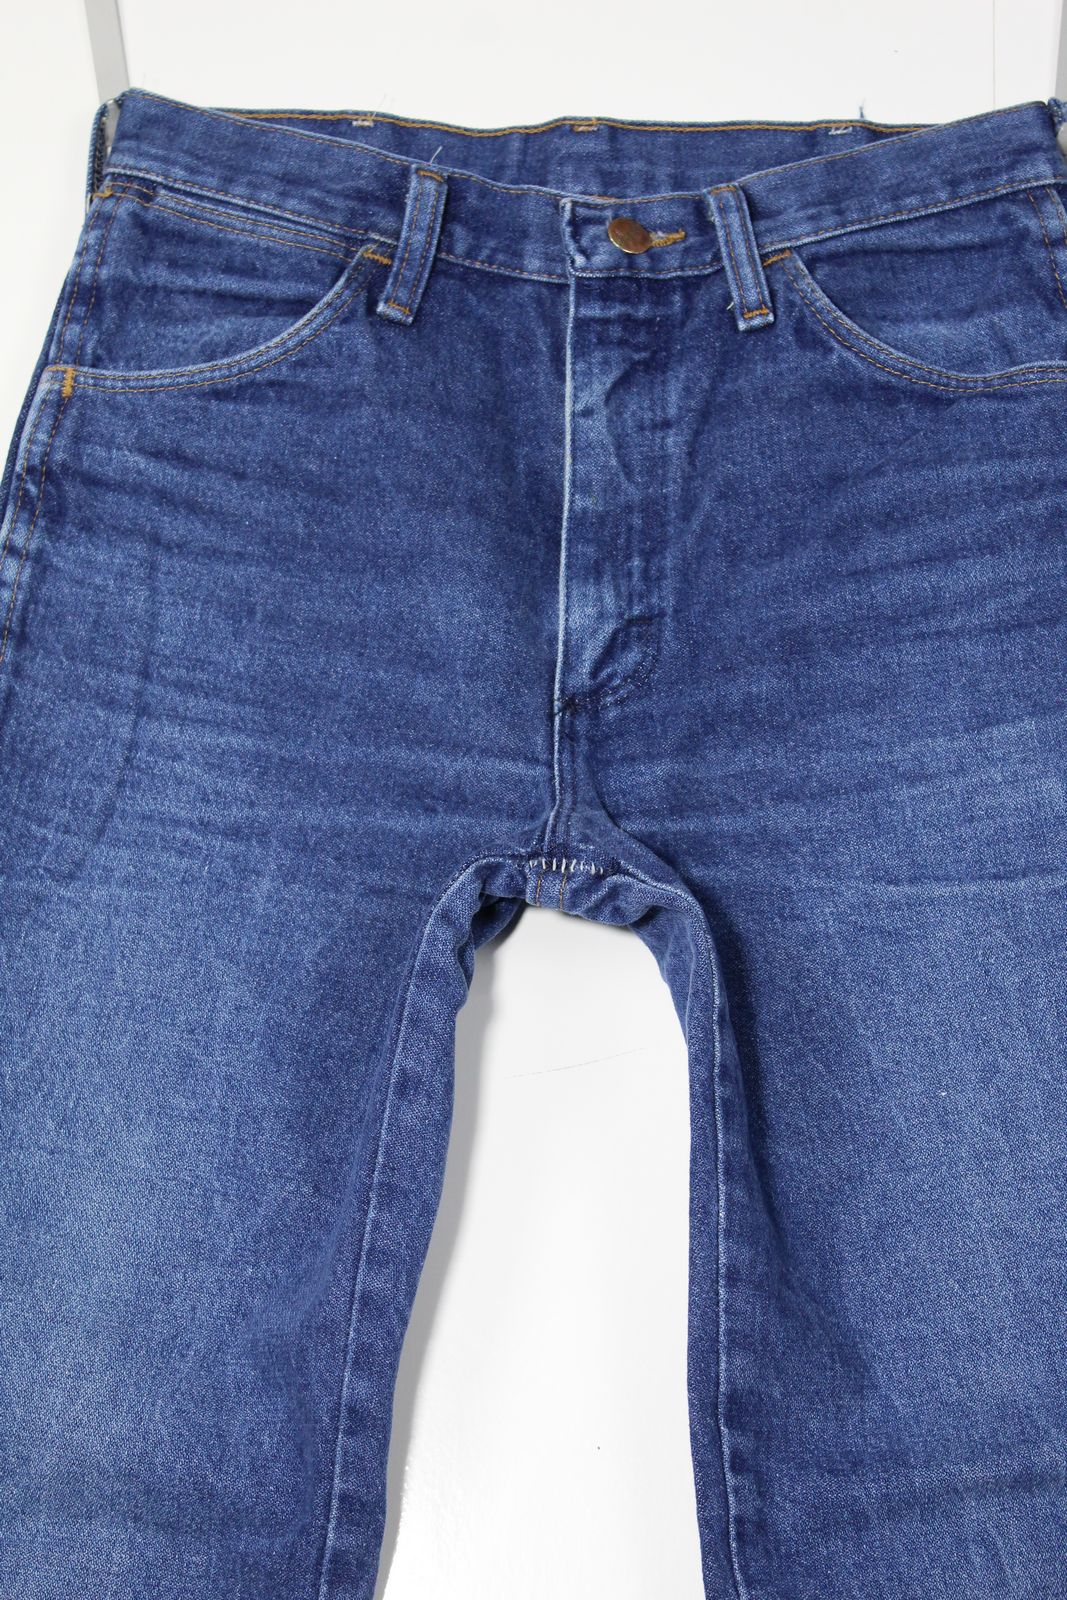 Wrangler vita alta Denim W30 L33 Made In USA Jeans Vintage